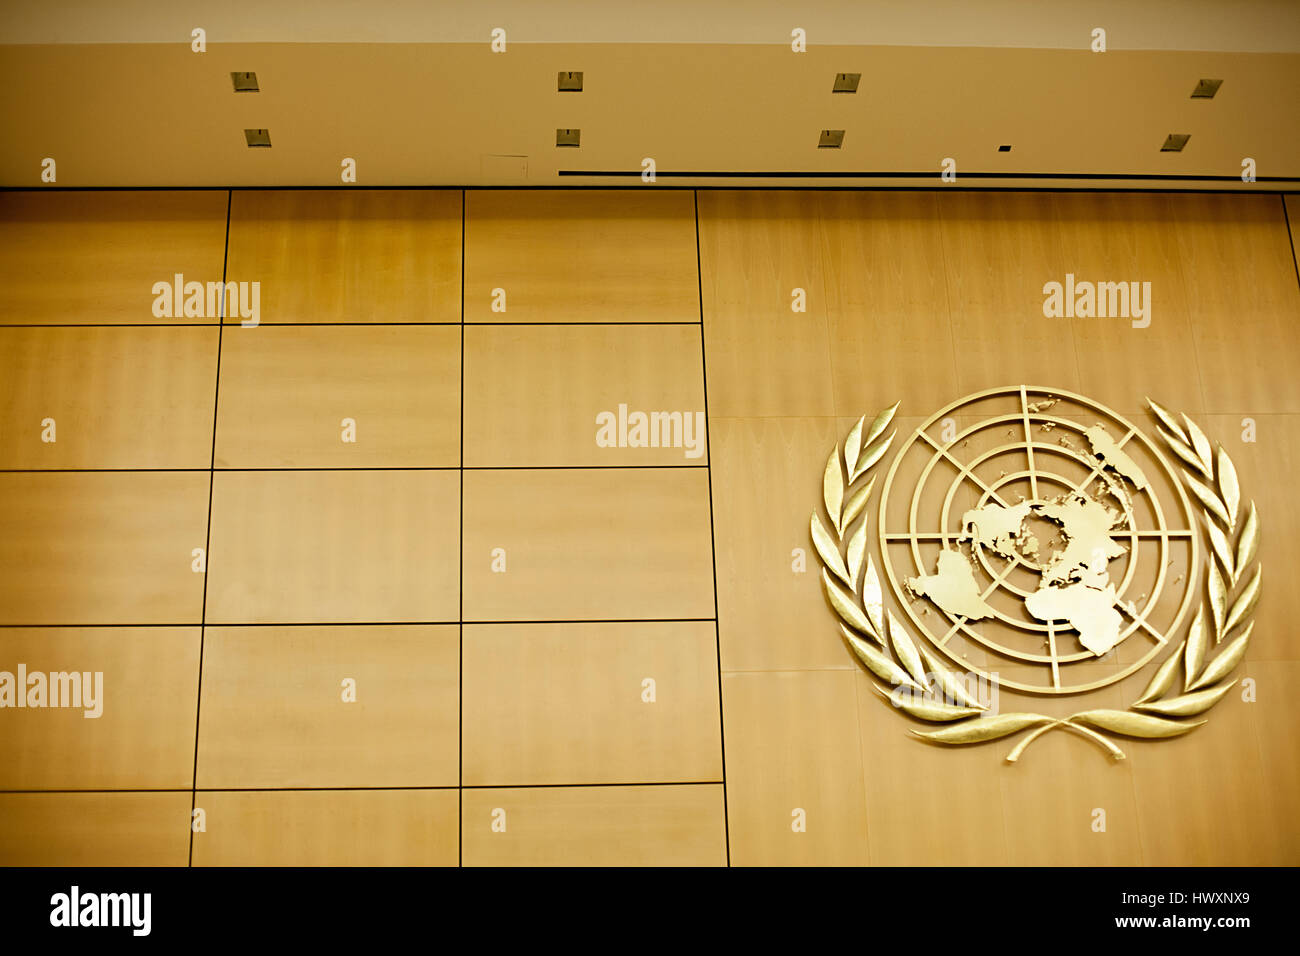 L'emblème de l'orne le mur de la salle de l'Assemblée de l'Office des Nations Unies à Genève, le Palais des Nations. Les branches d'oliviers autour de la wo Banque D'Images